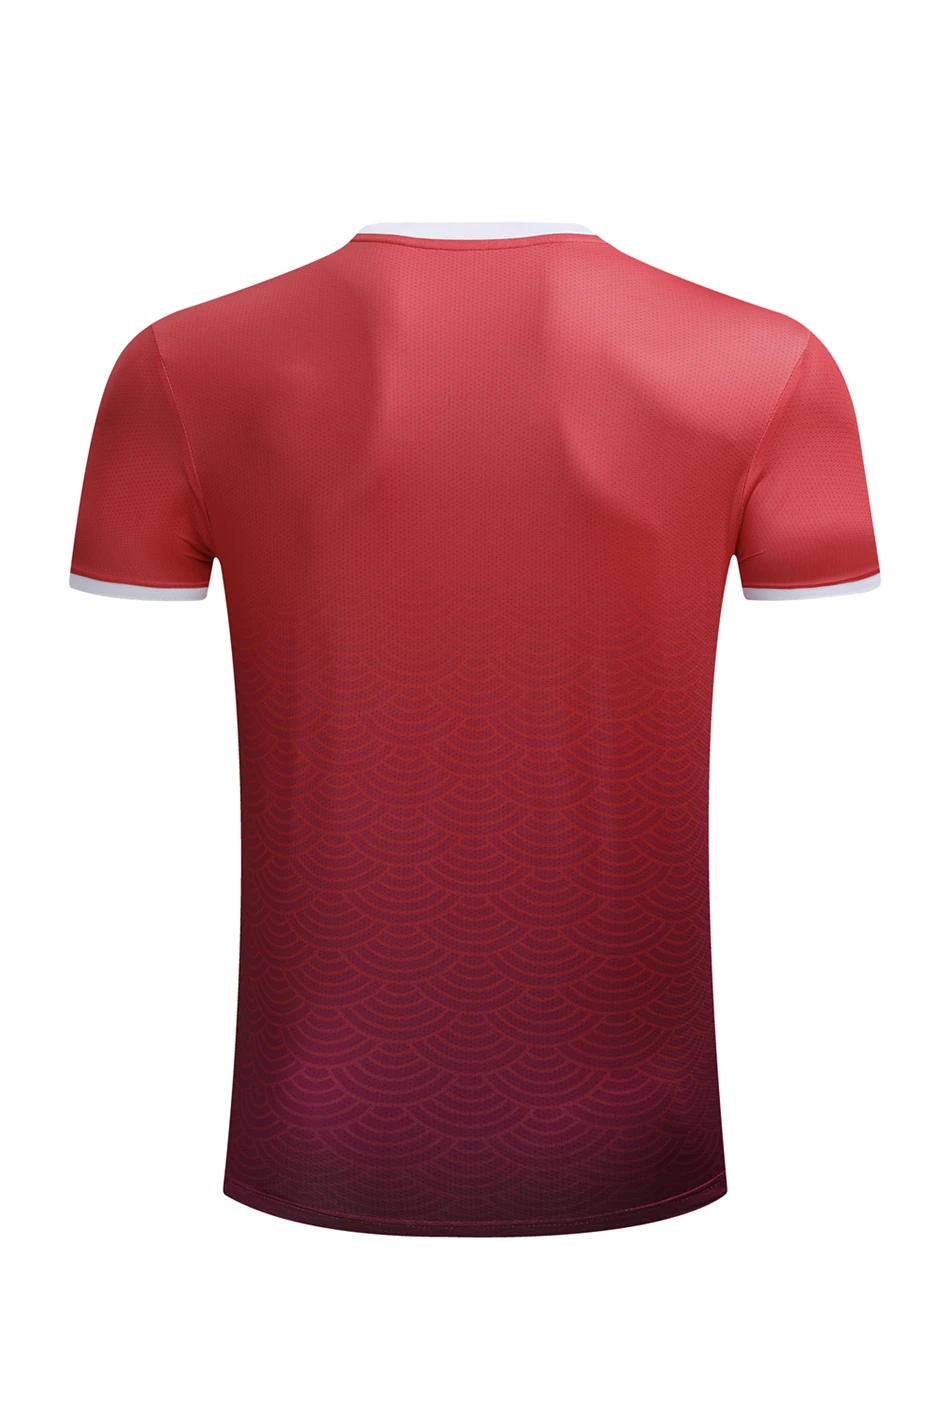 Мужская и женская рубашка для бадминтона, быстросохнущая футболка для настольного тенниса, спортивная одежда для бадминтона, новинка, одежда для тенниса 3078A